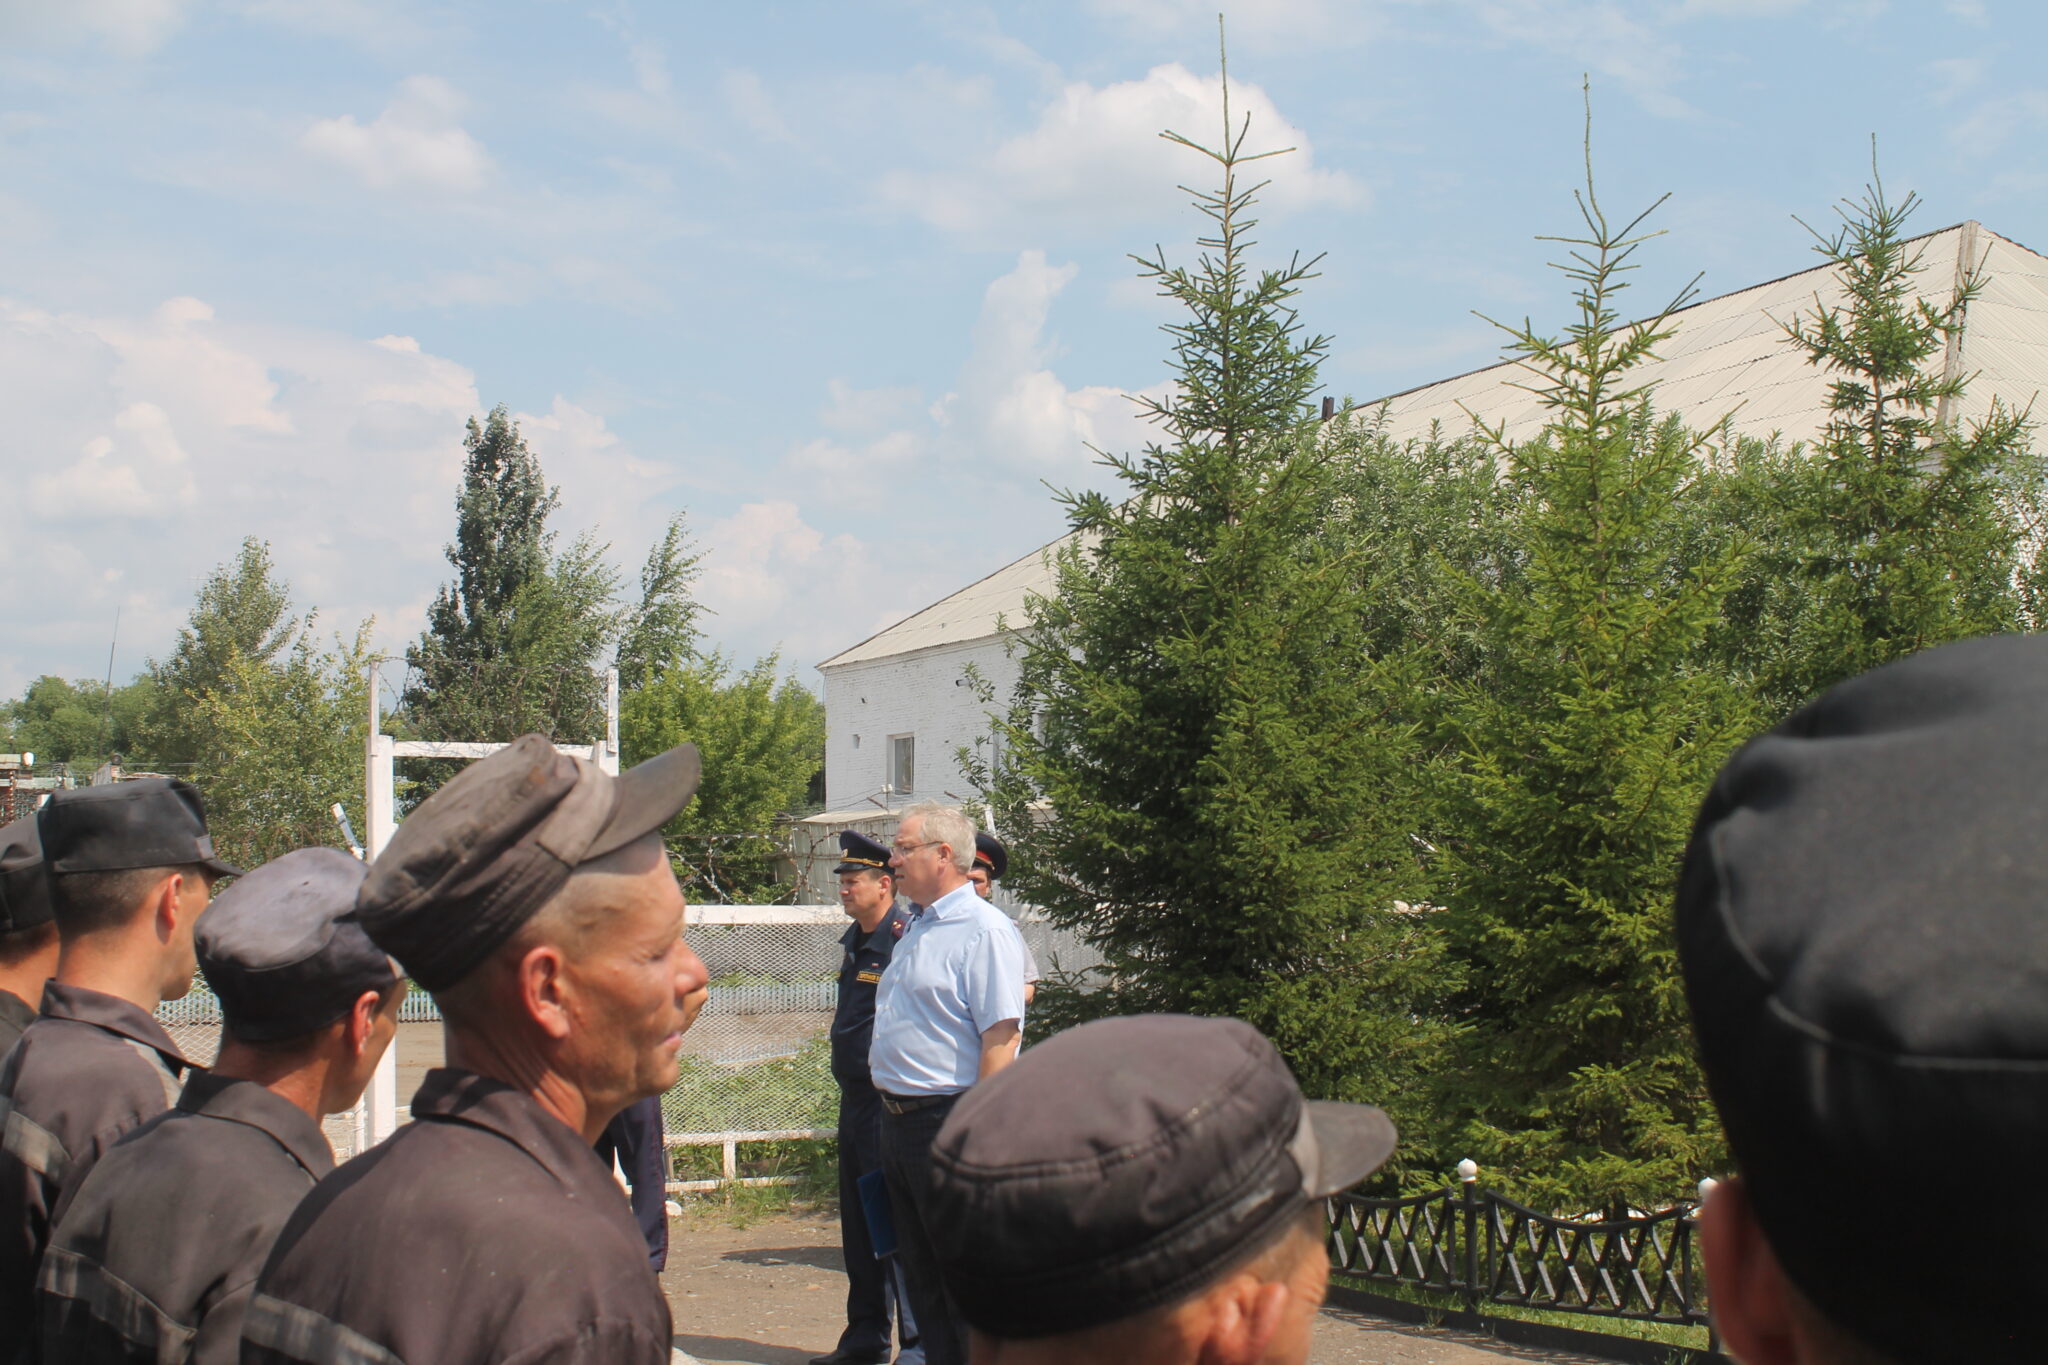 ИК 4 Исилькуль. Тюрьма в Исилькуле Омской области. Фото ИК 4 Исилькуль. Погода красная горка омская